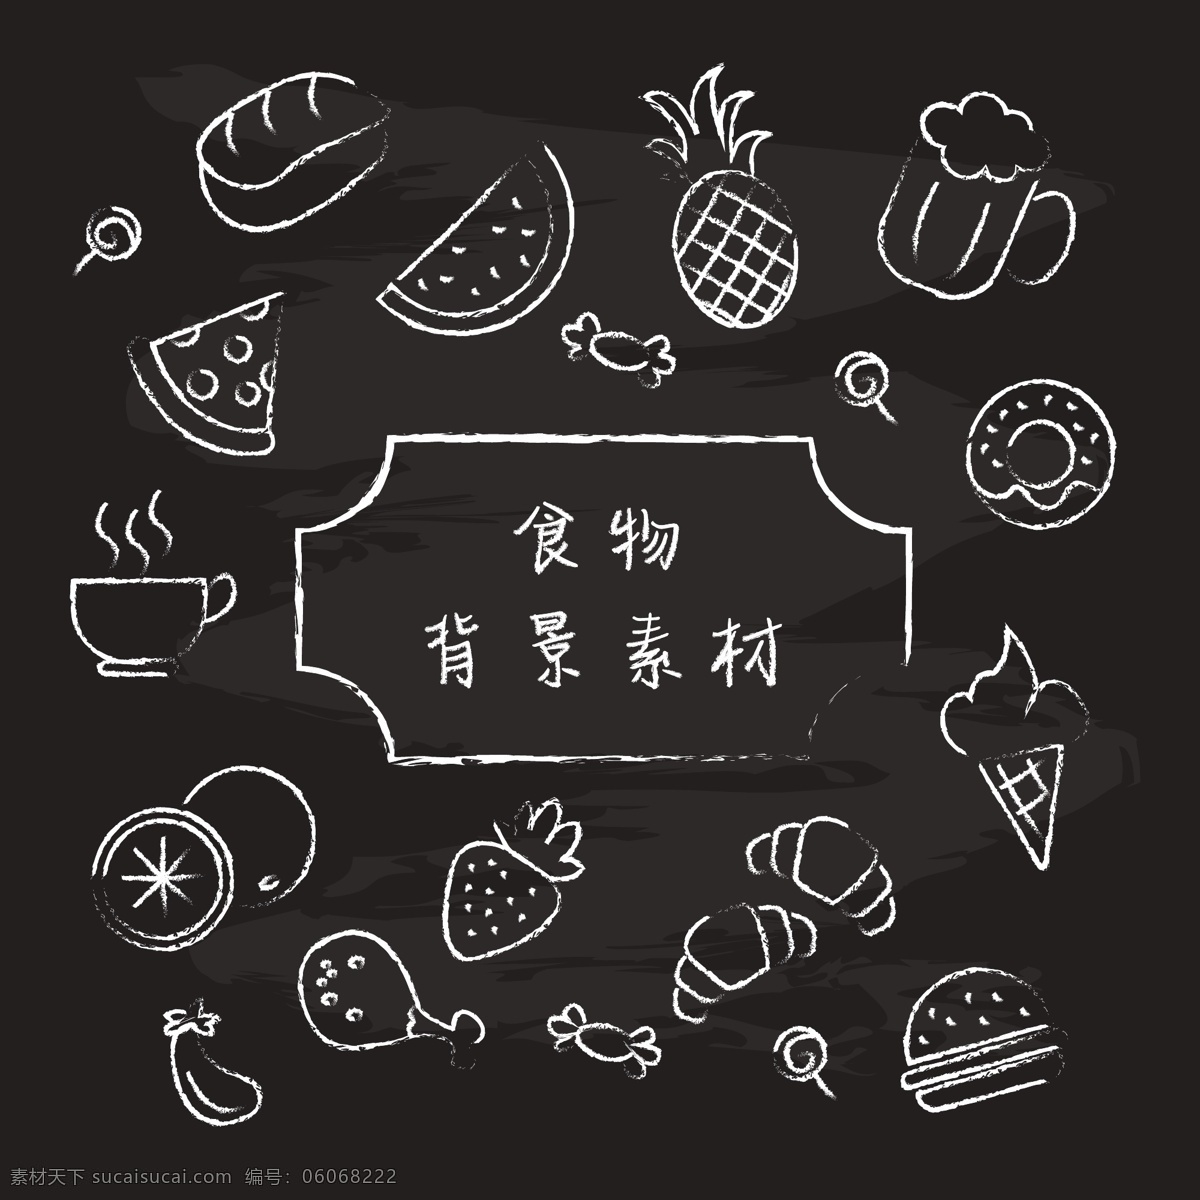 黑白 食物 背景 矢量 水果 插画 卡通食物 手绘食物 食物插画 线条食物 线稿食物 速写食物 矢量蔬菜 生活百科 餐饮美食